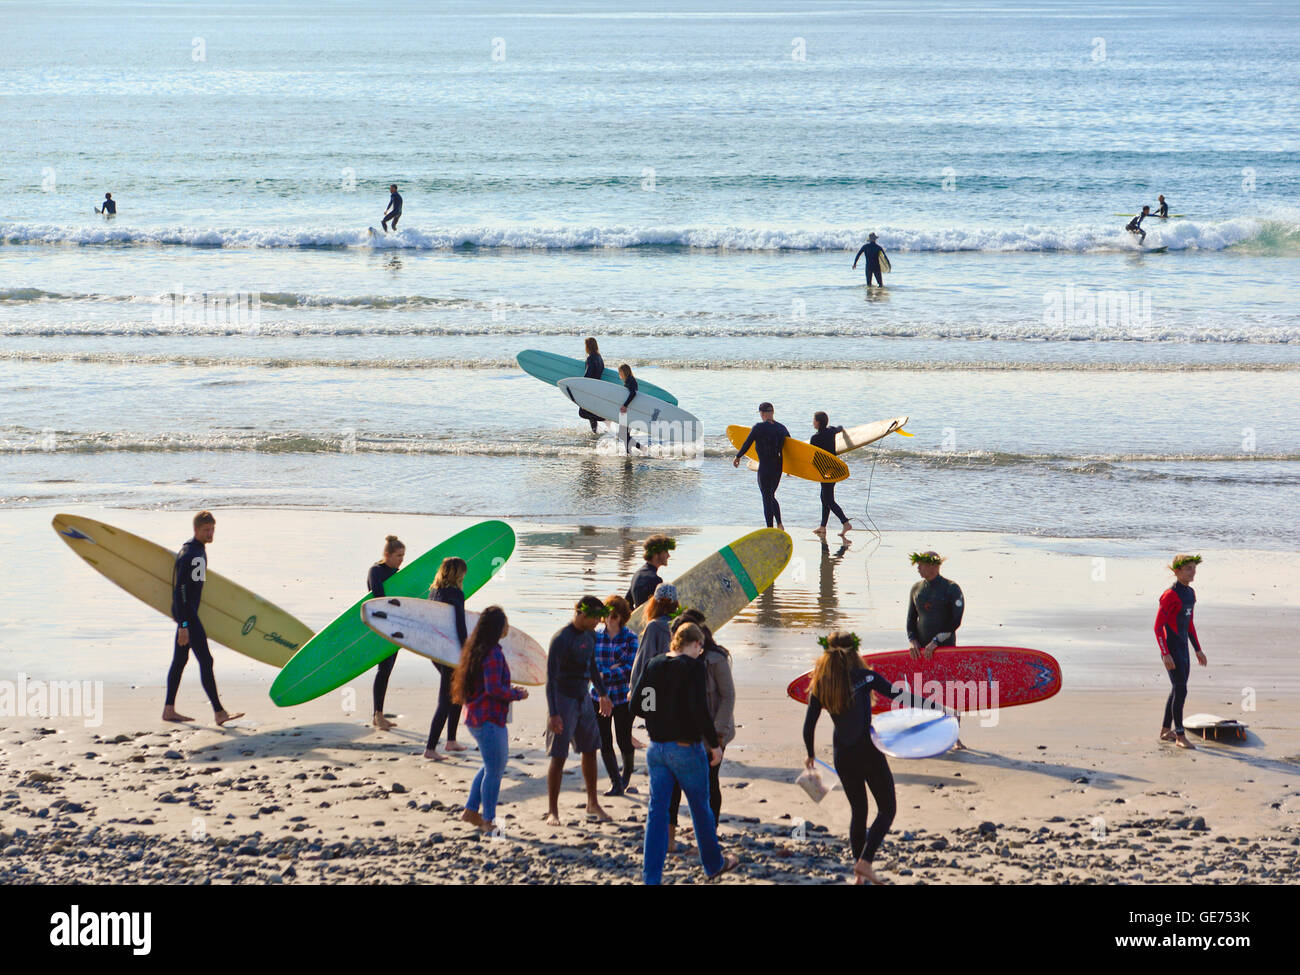 San Diego, Californie, les surfers sur une plage bondée Banque D'Images